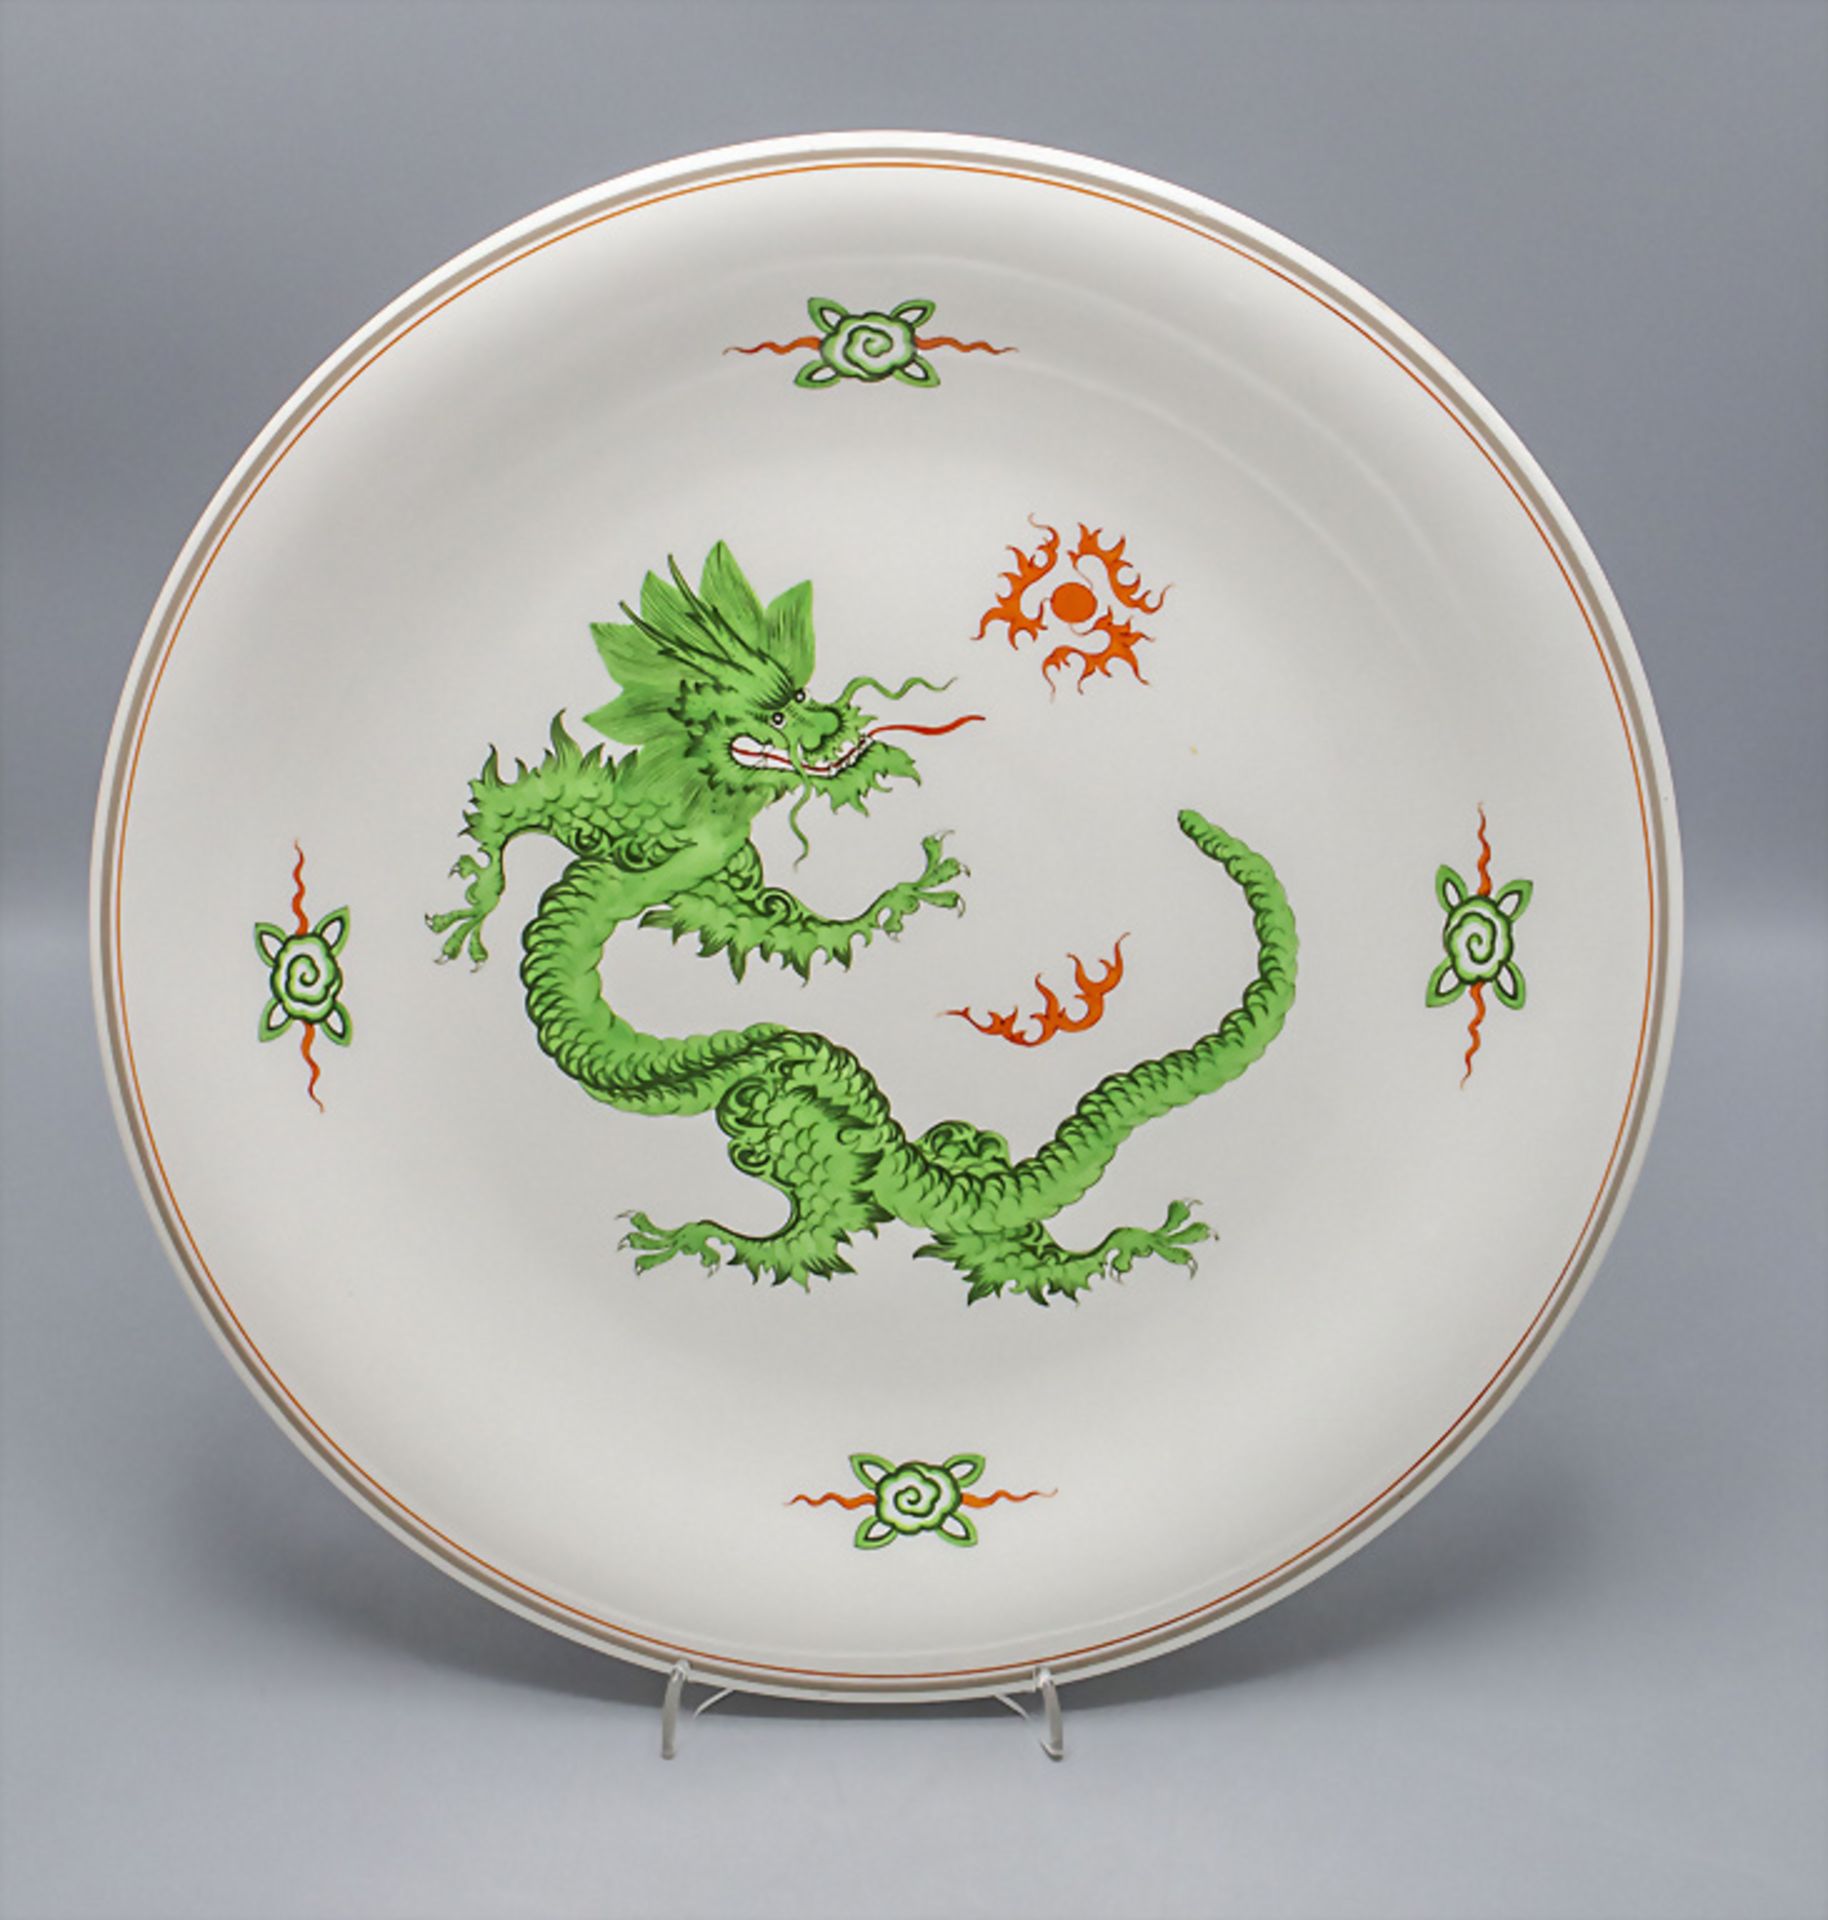 Wandteller 'Ming-Drache' / A wall plate 'Ming dragon', Meissen, nach 1934